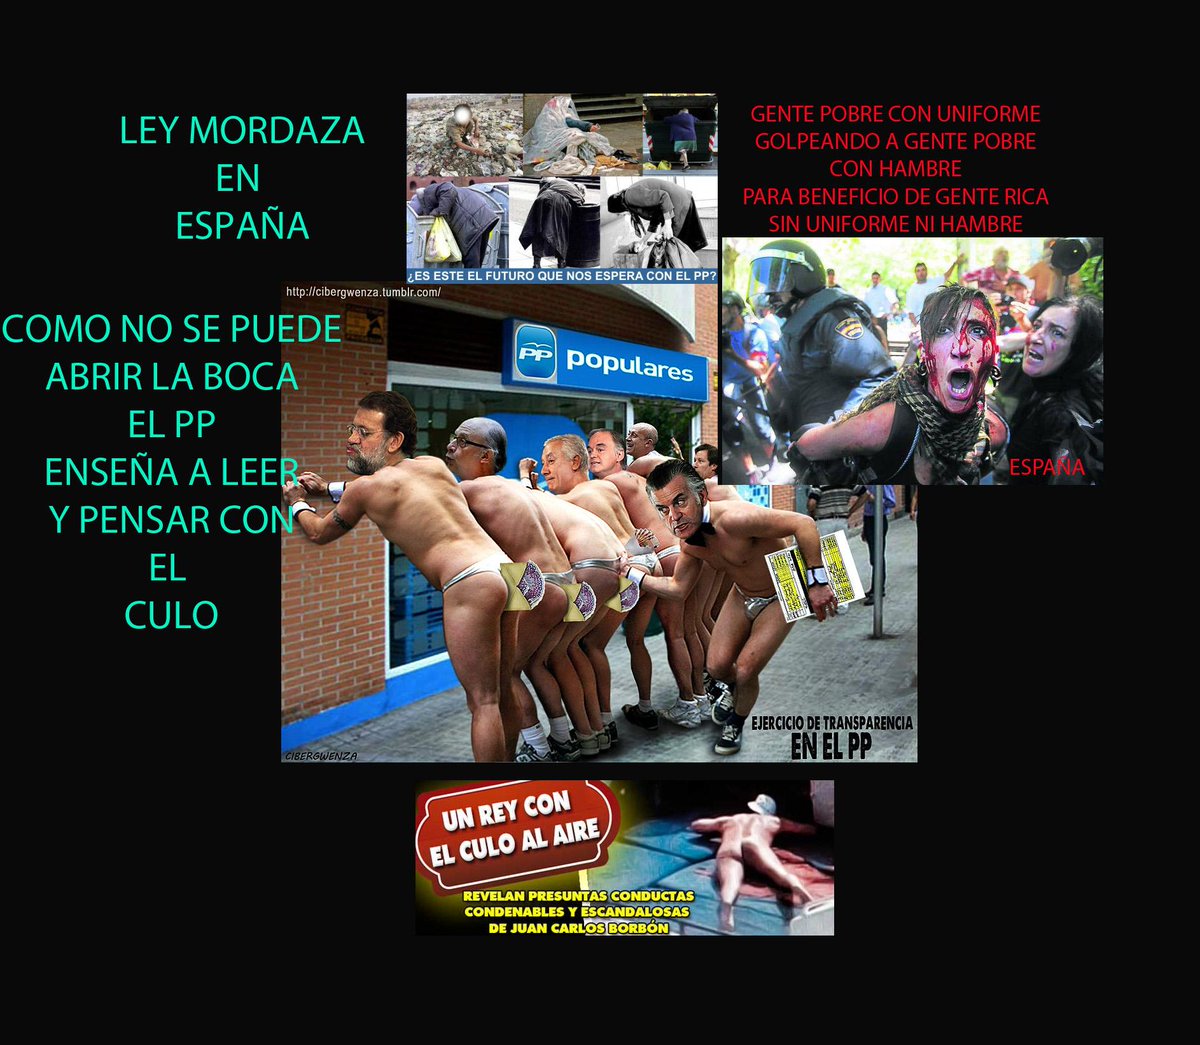 .@LuisBracamont14 LEY MORDAZA EN ESPAÑA, AYUDAREMOS A LOS ESPAÑOLES A PUBLICAR APROVECHANDO LA LIBERTAD DE VENEZUELA